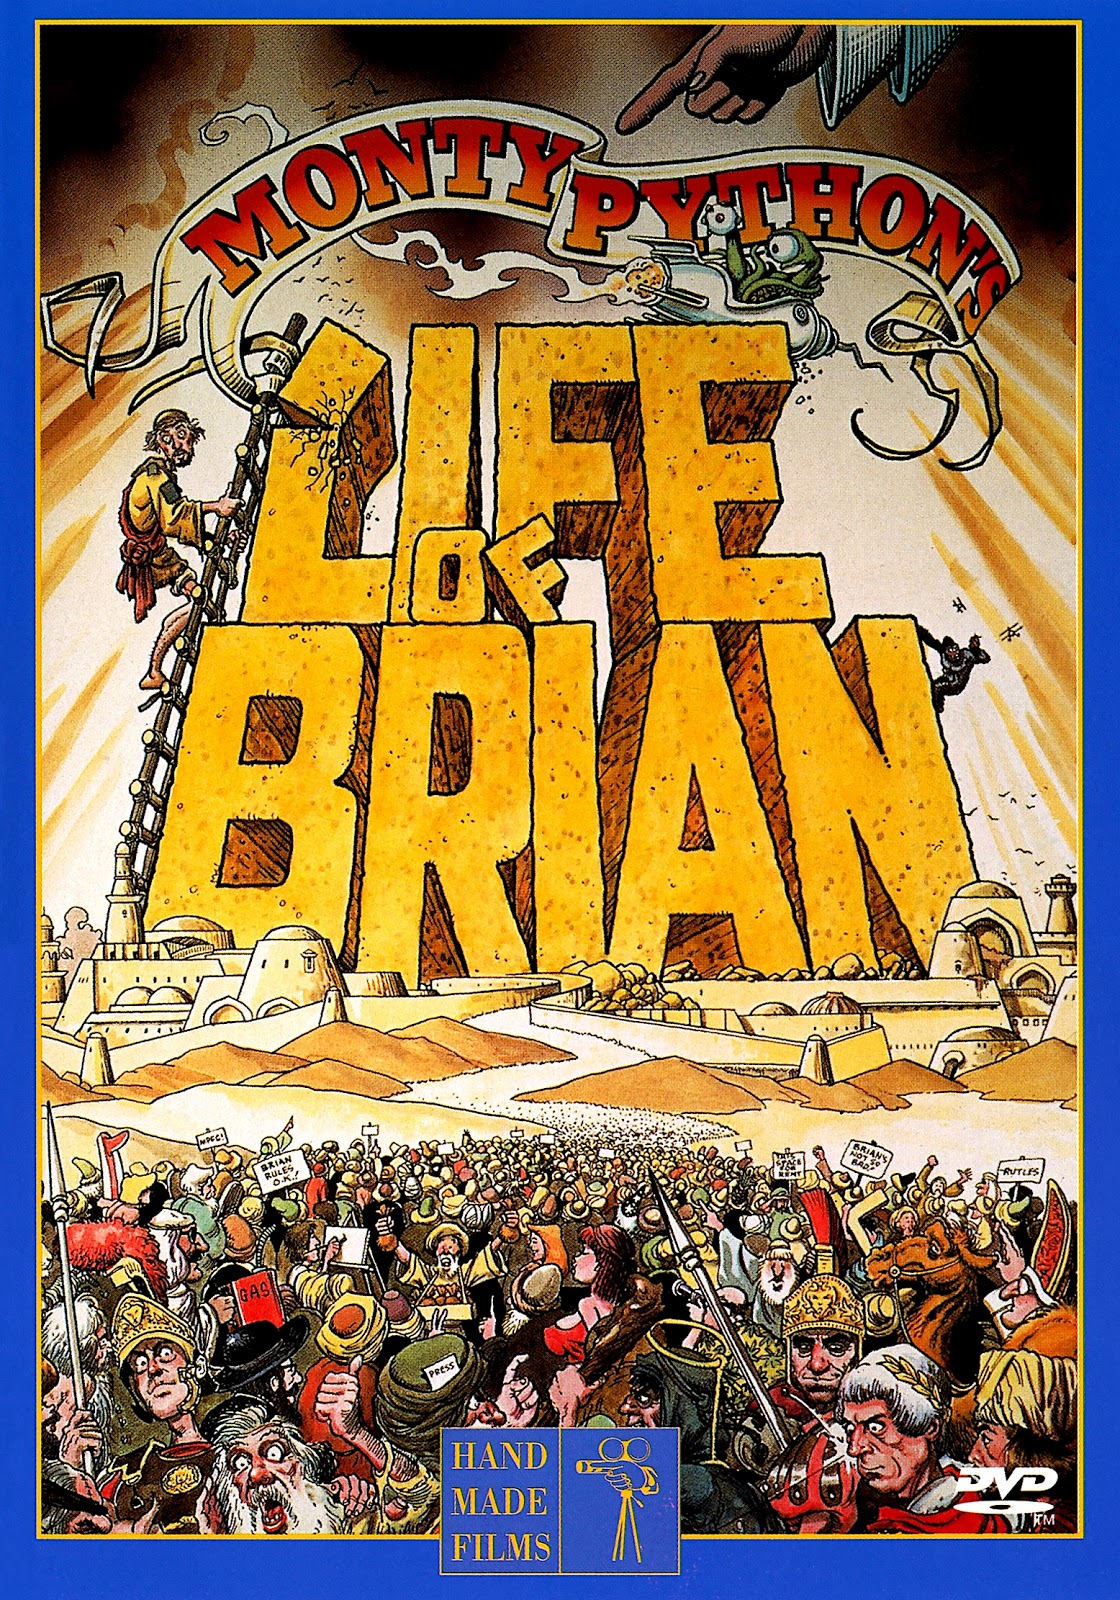 Житие брайана по монти пайтон. Житие Брайана по Монти Пайтону. Life of Brian 1979. Житие Брайана по Монти Пайтон Постер. Монти Пайтон жизнь Брайана.